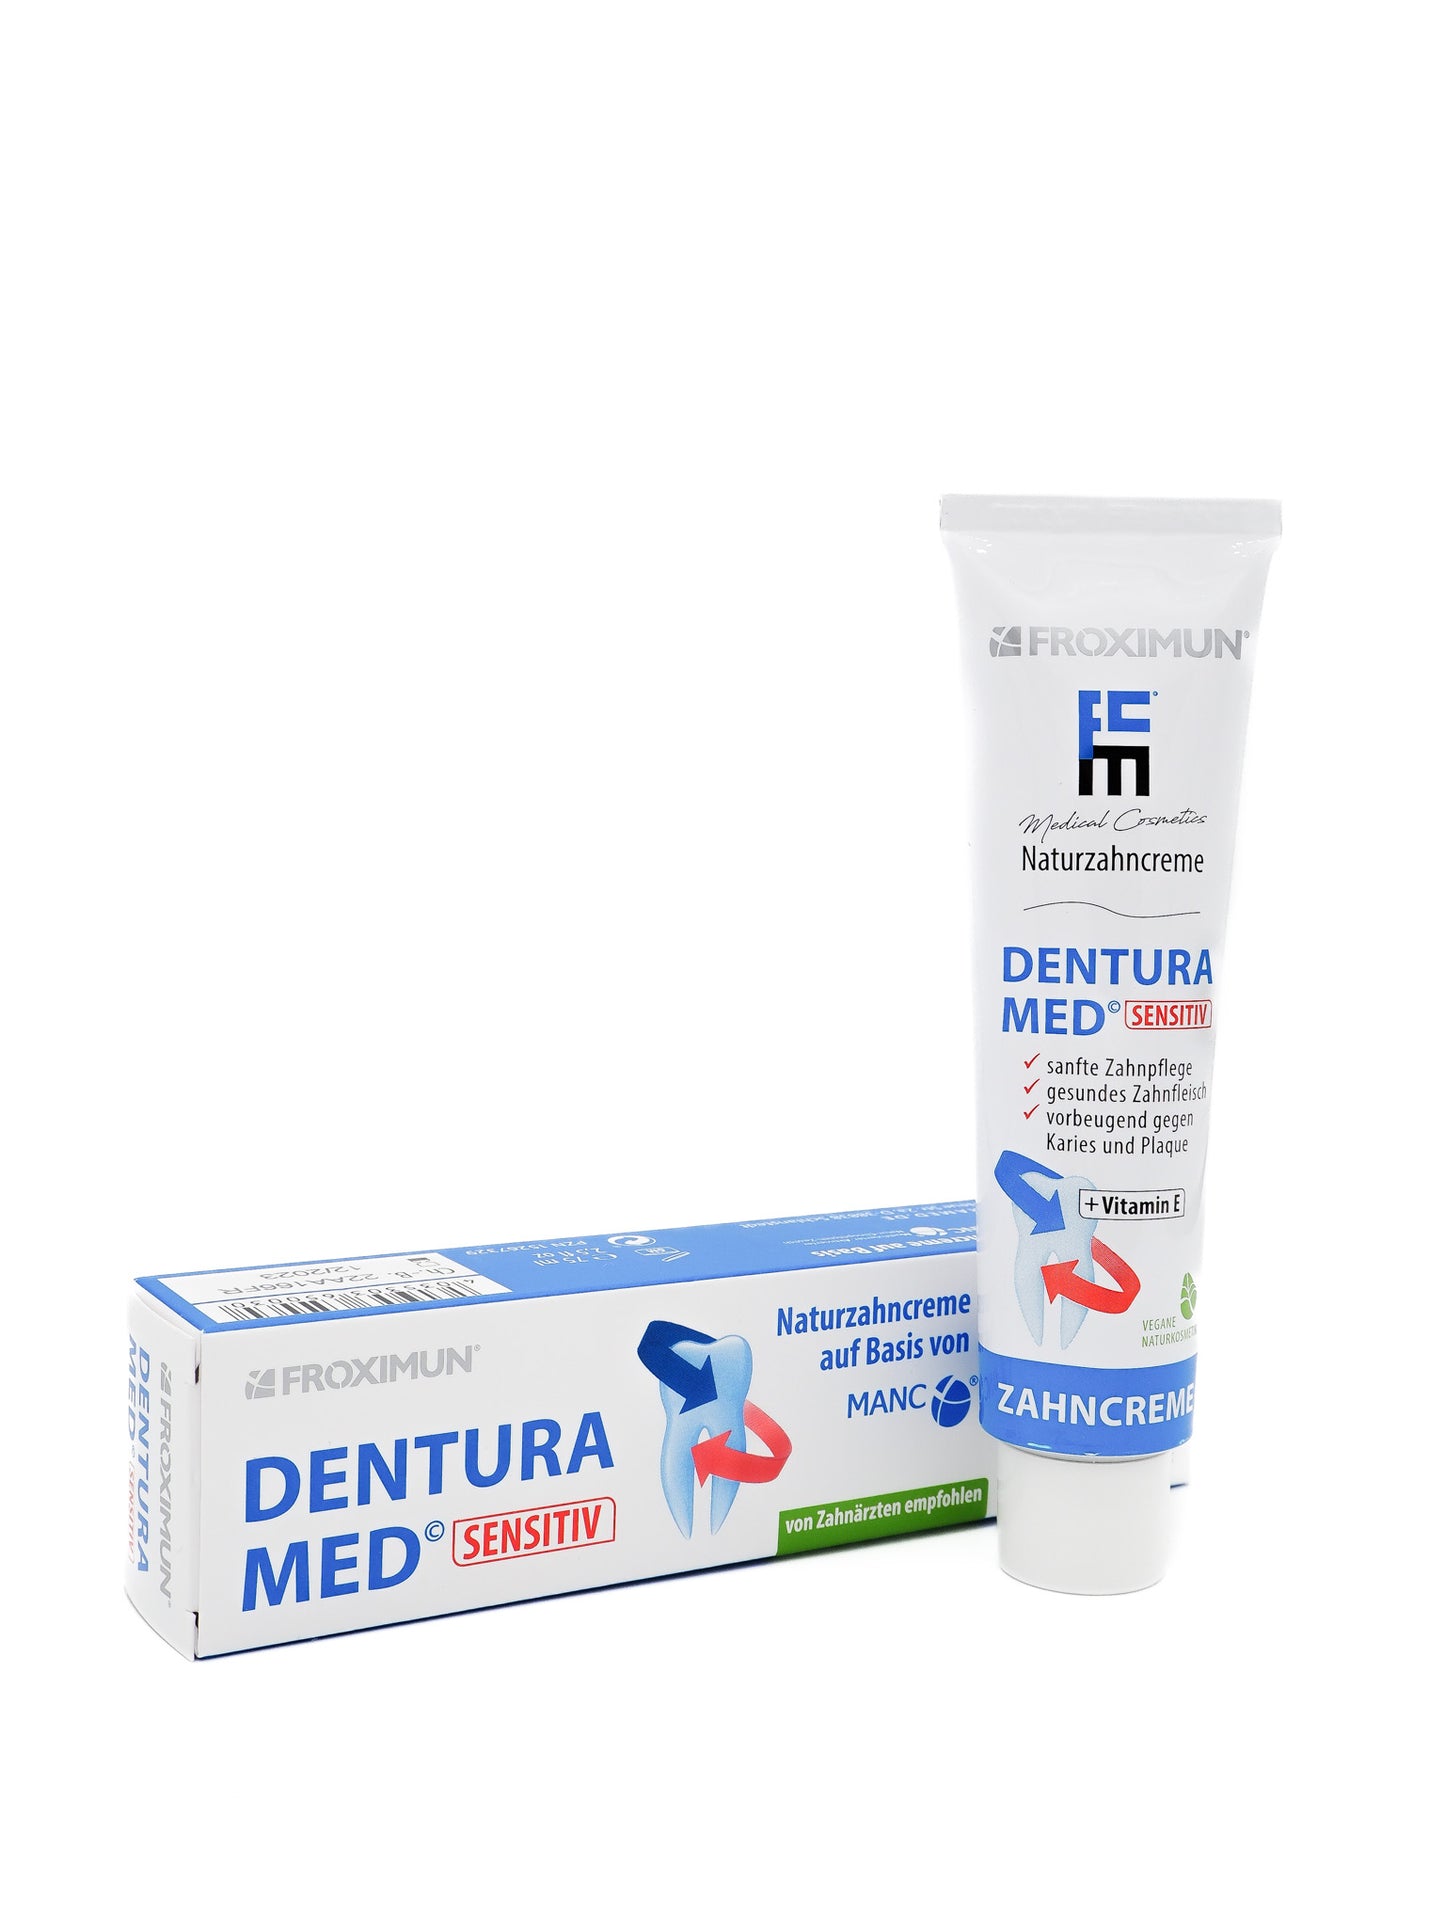 Froximun® DENTURA MED Natural Toothpaste 75 ml